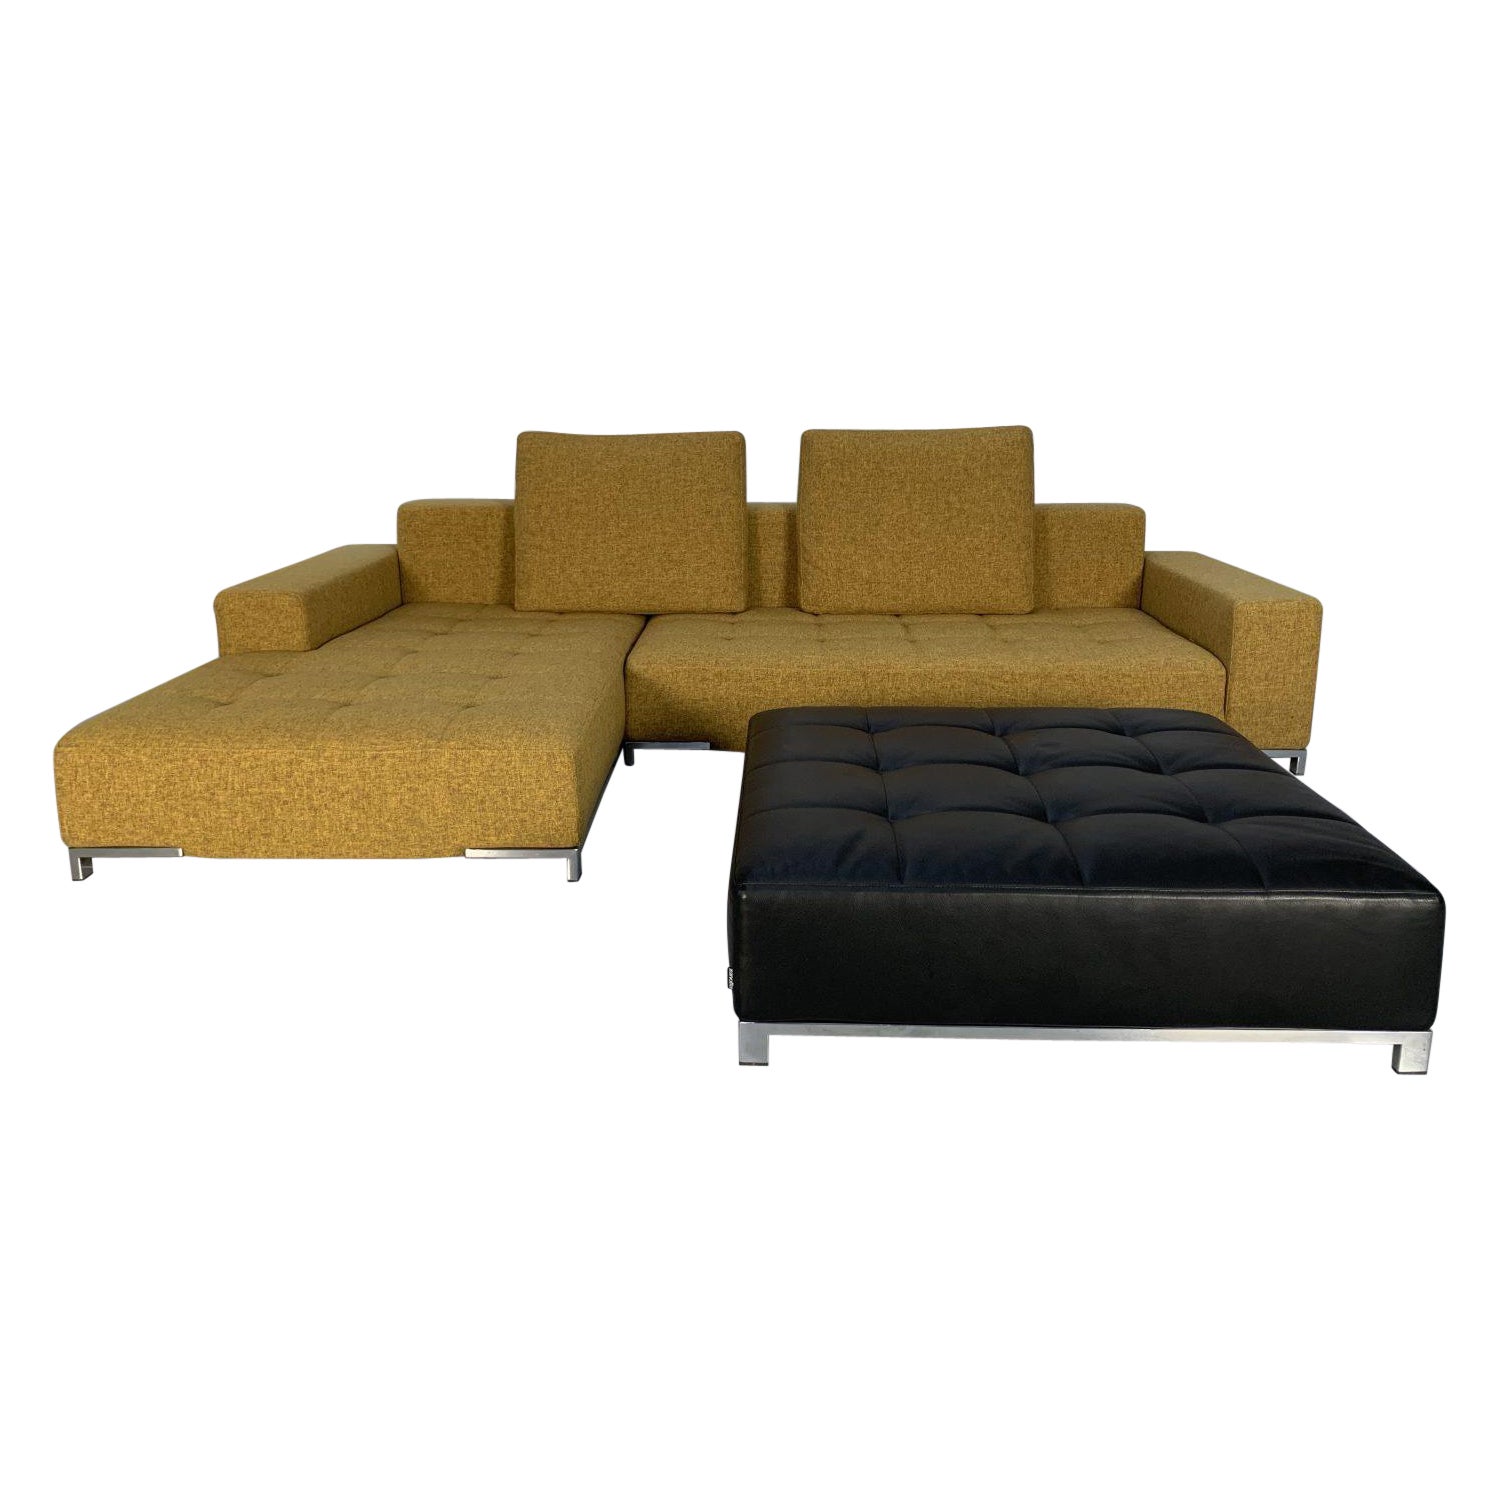 Zanotta “Alfa 1326” L- Shape Sofa & Ottoman in Yellow Linen & Black Leather